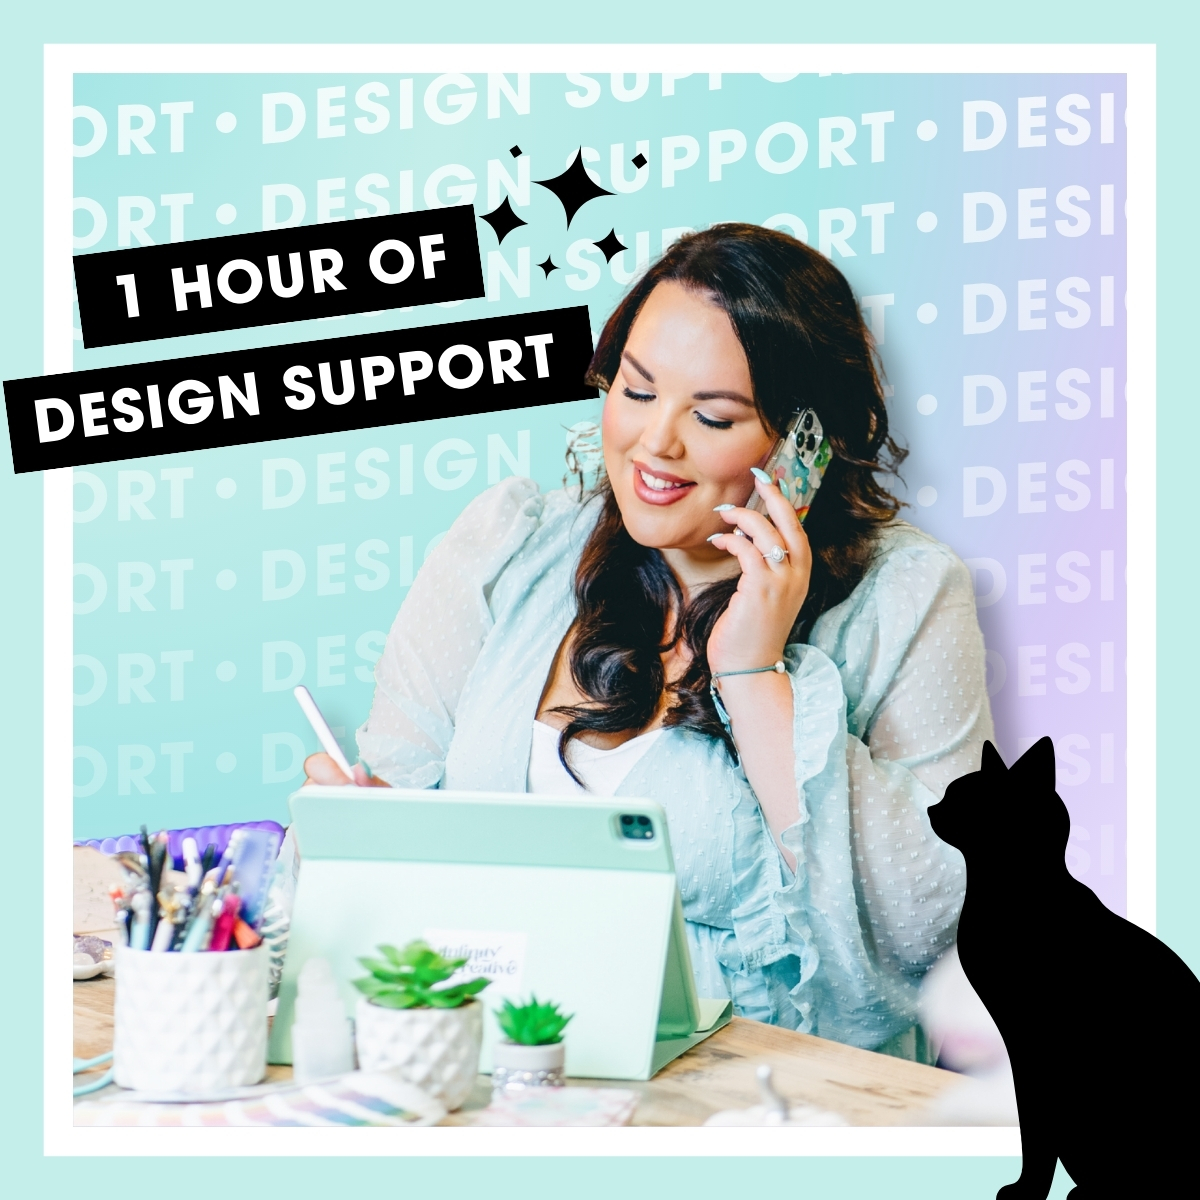 Design Support | Graphic Design | Brand Alchemist | Infinity Creative